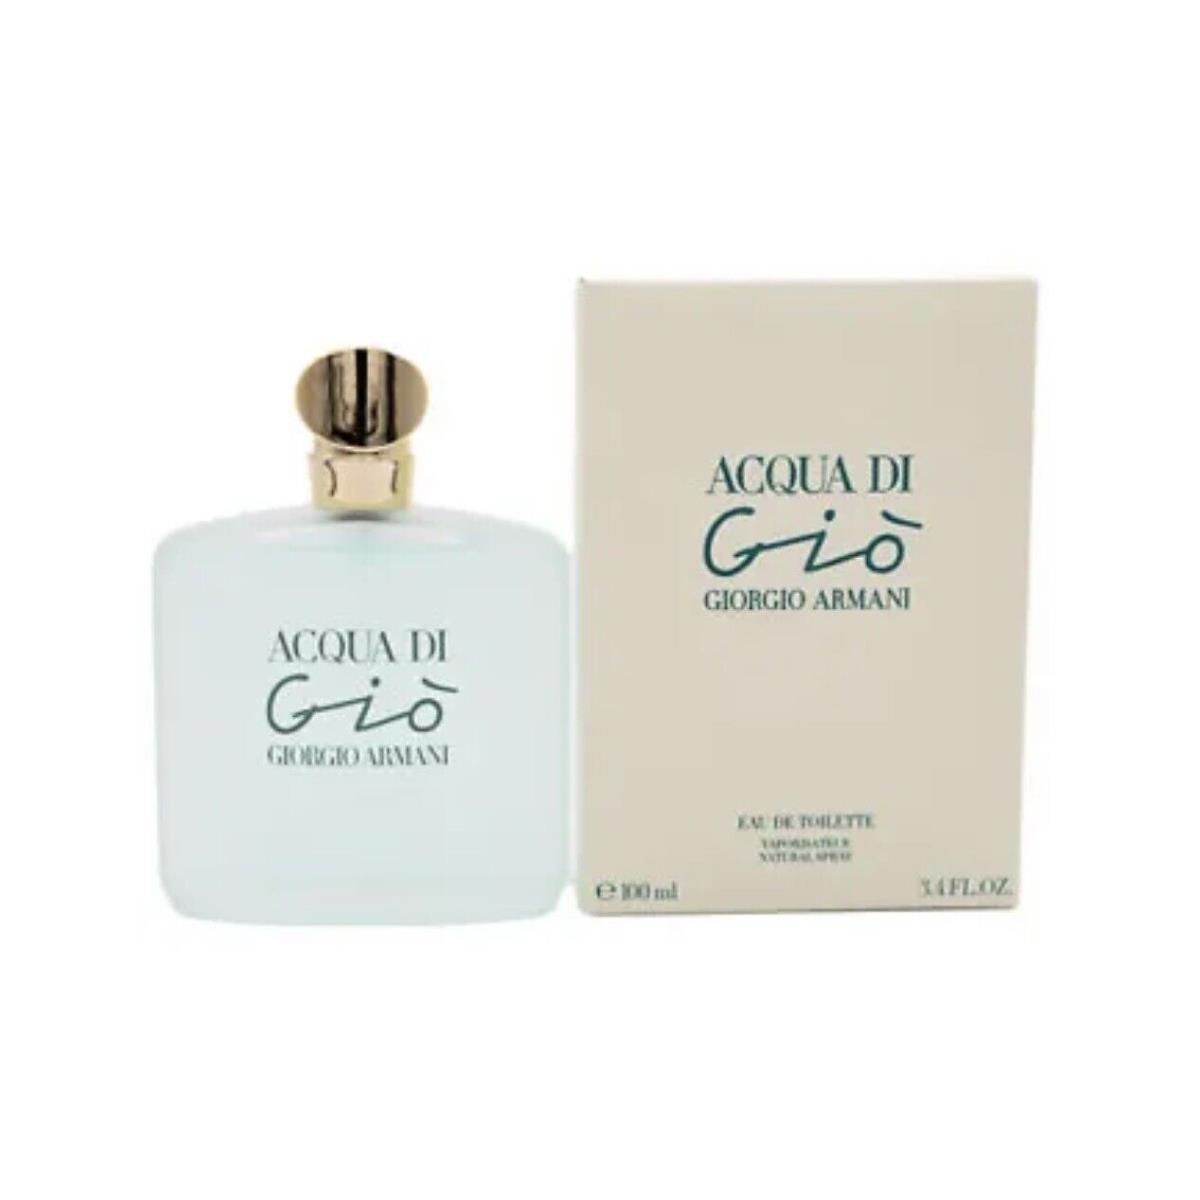 Acqua Di Gio by Giorgio Armani 3.4 oz Edt Perfume For Women